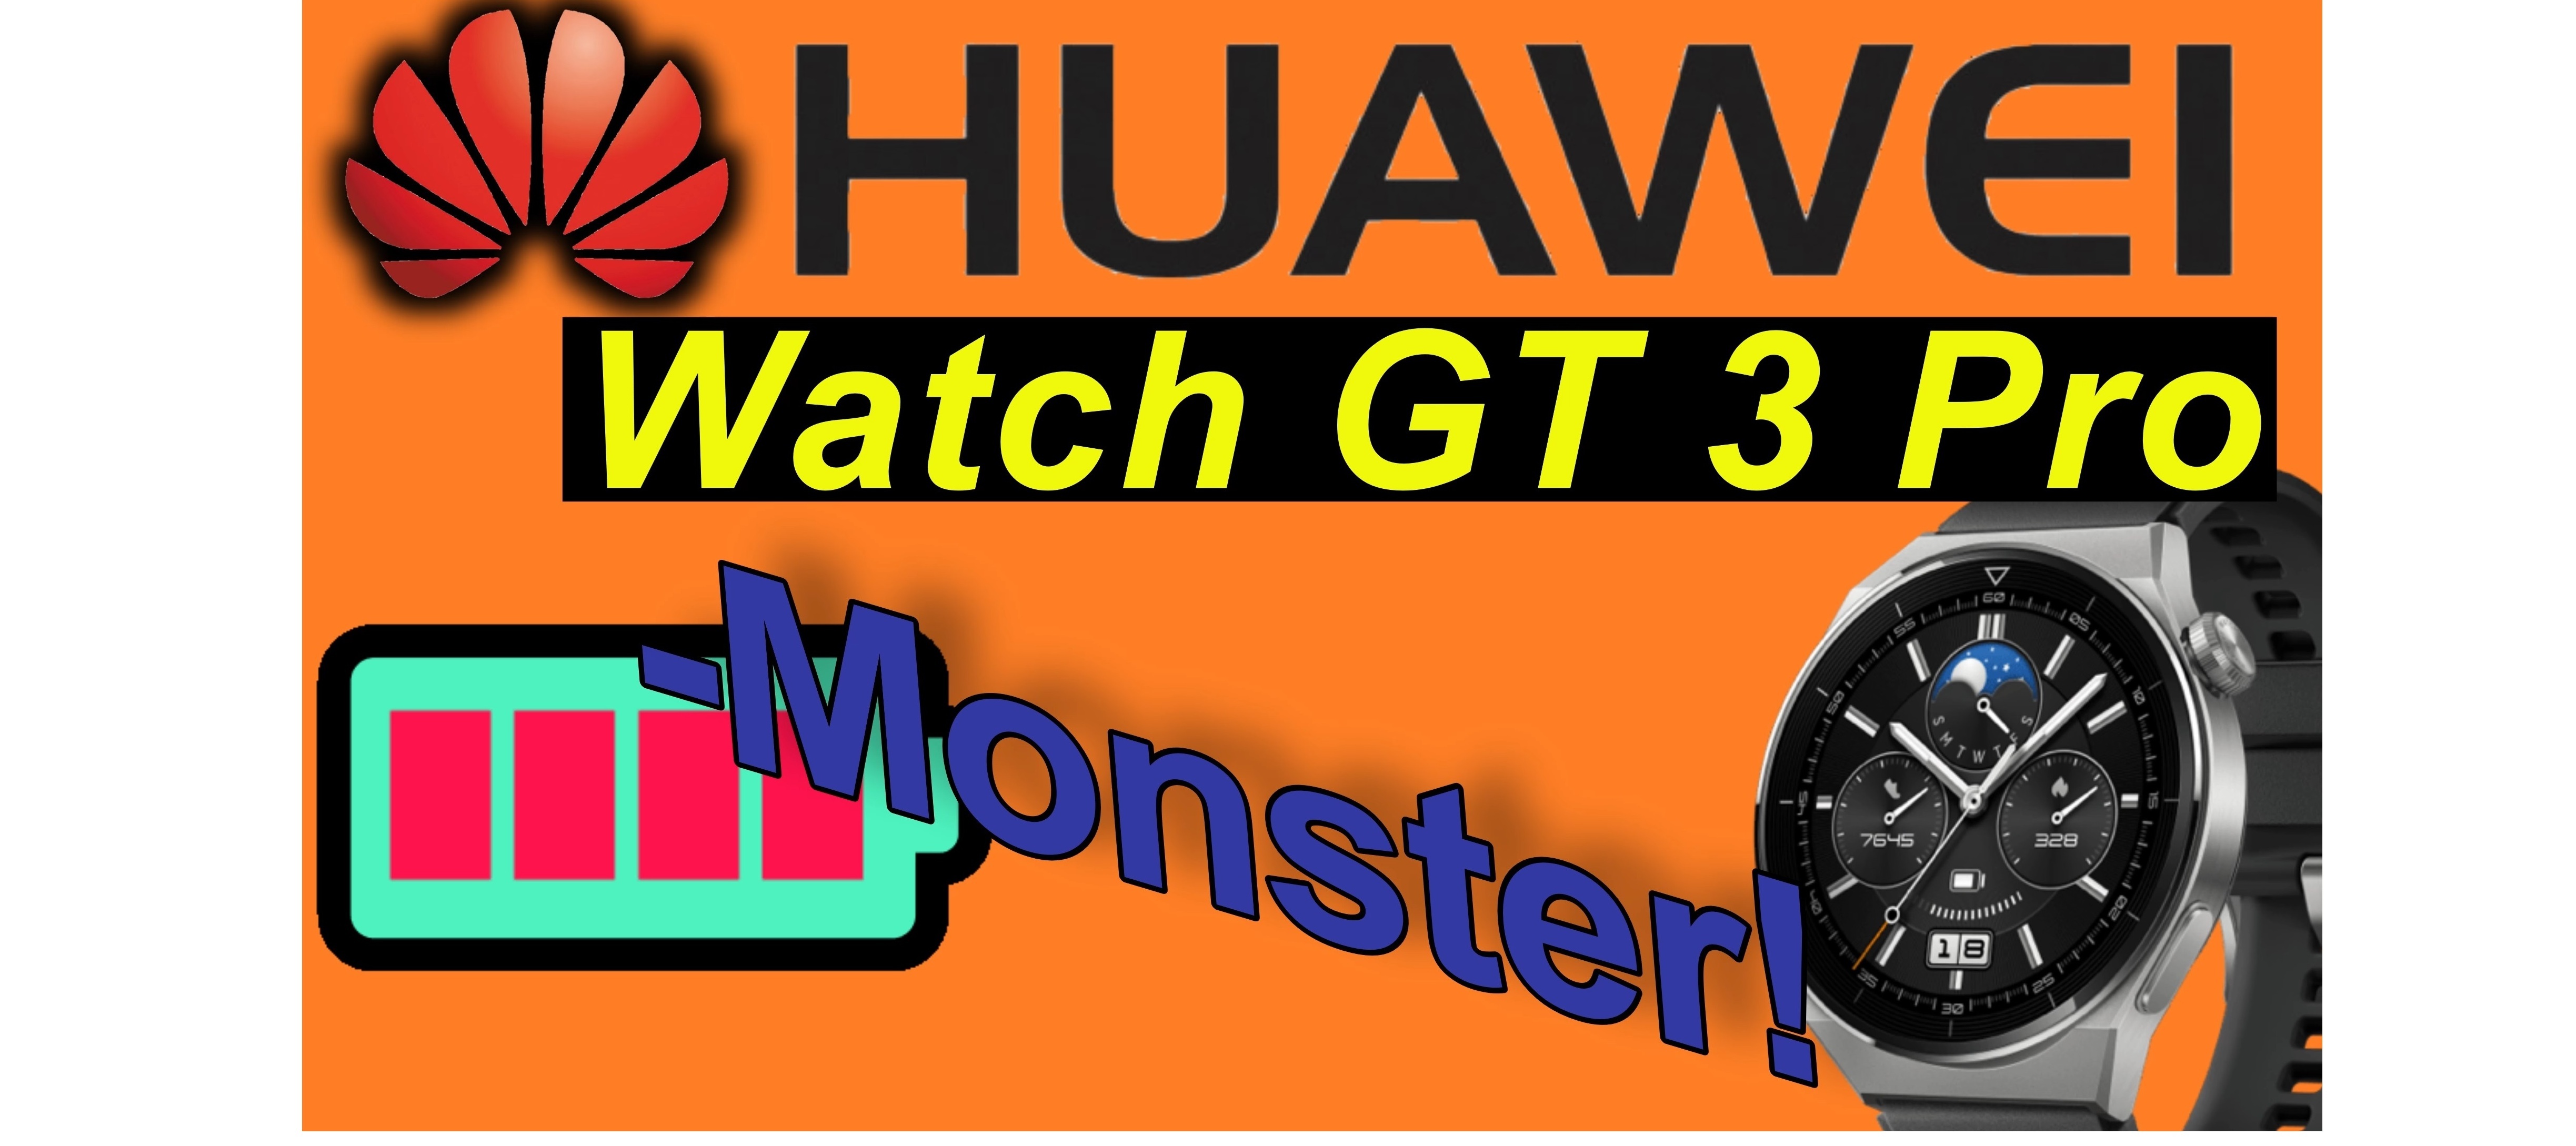 Huawei Watch GT 3 Pro. Das Akku Monster